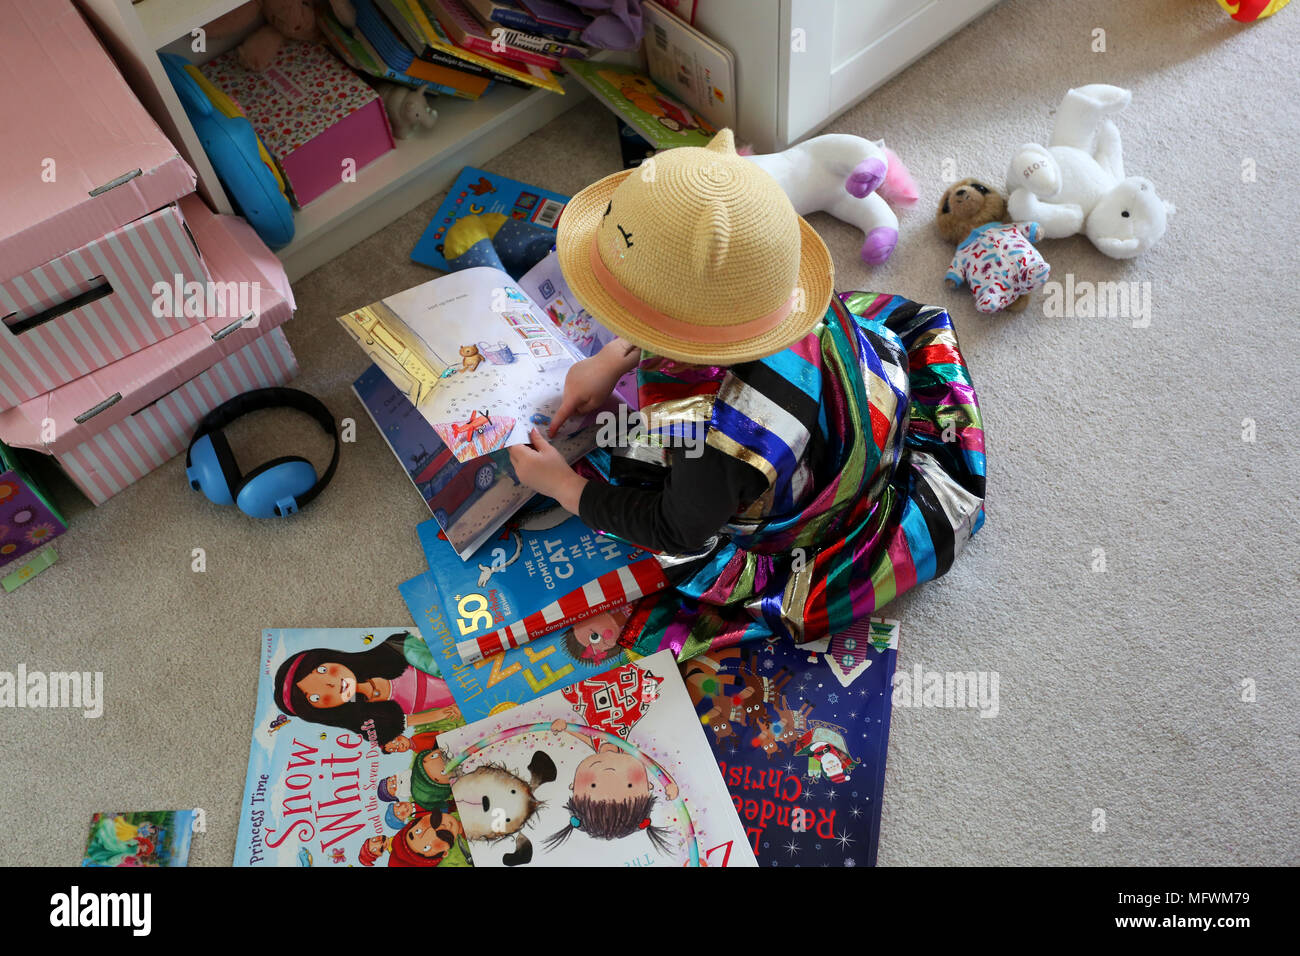 Une jeune fille lisant des livres dans sa chambre vêtue de vêtements colorés cool à Londres, au Royaume-Uni. Banque D'Images